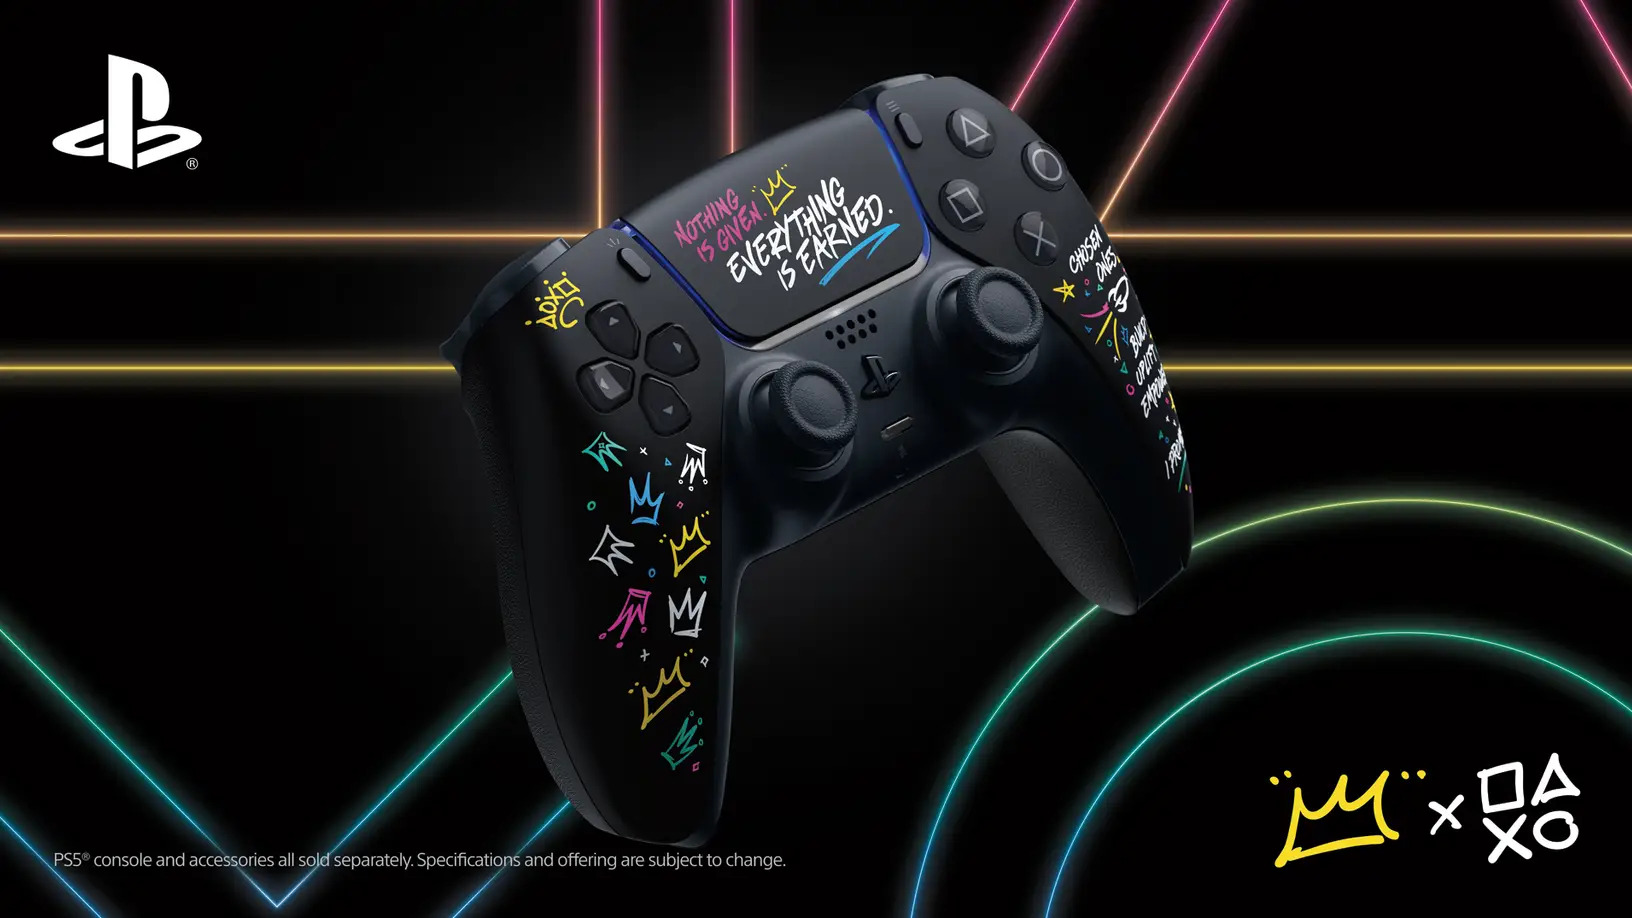 Imagem mostra linha especial de acessórios do PlayStation 5, tematizados a partir da marca LeBron James